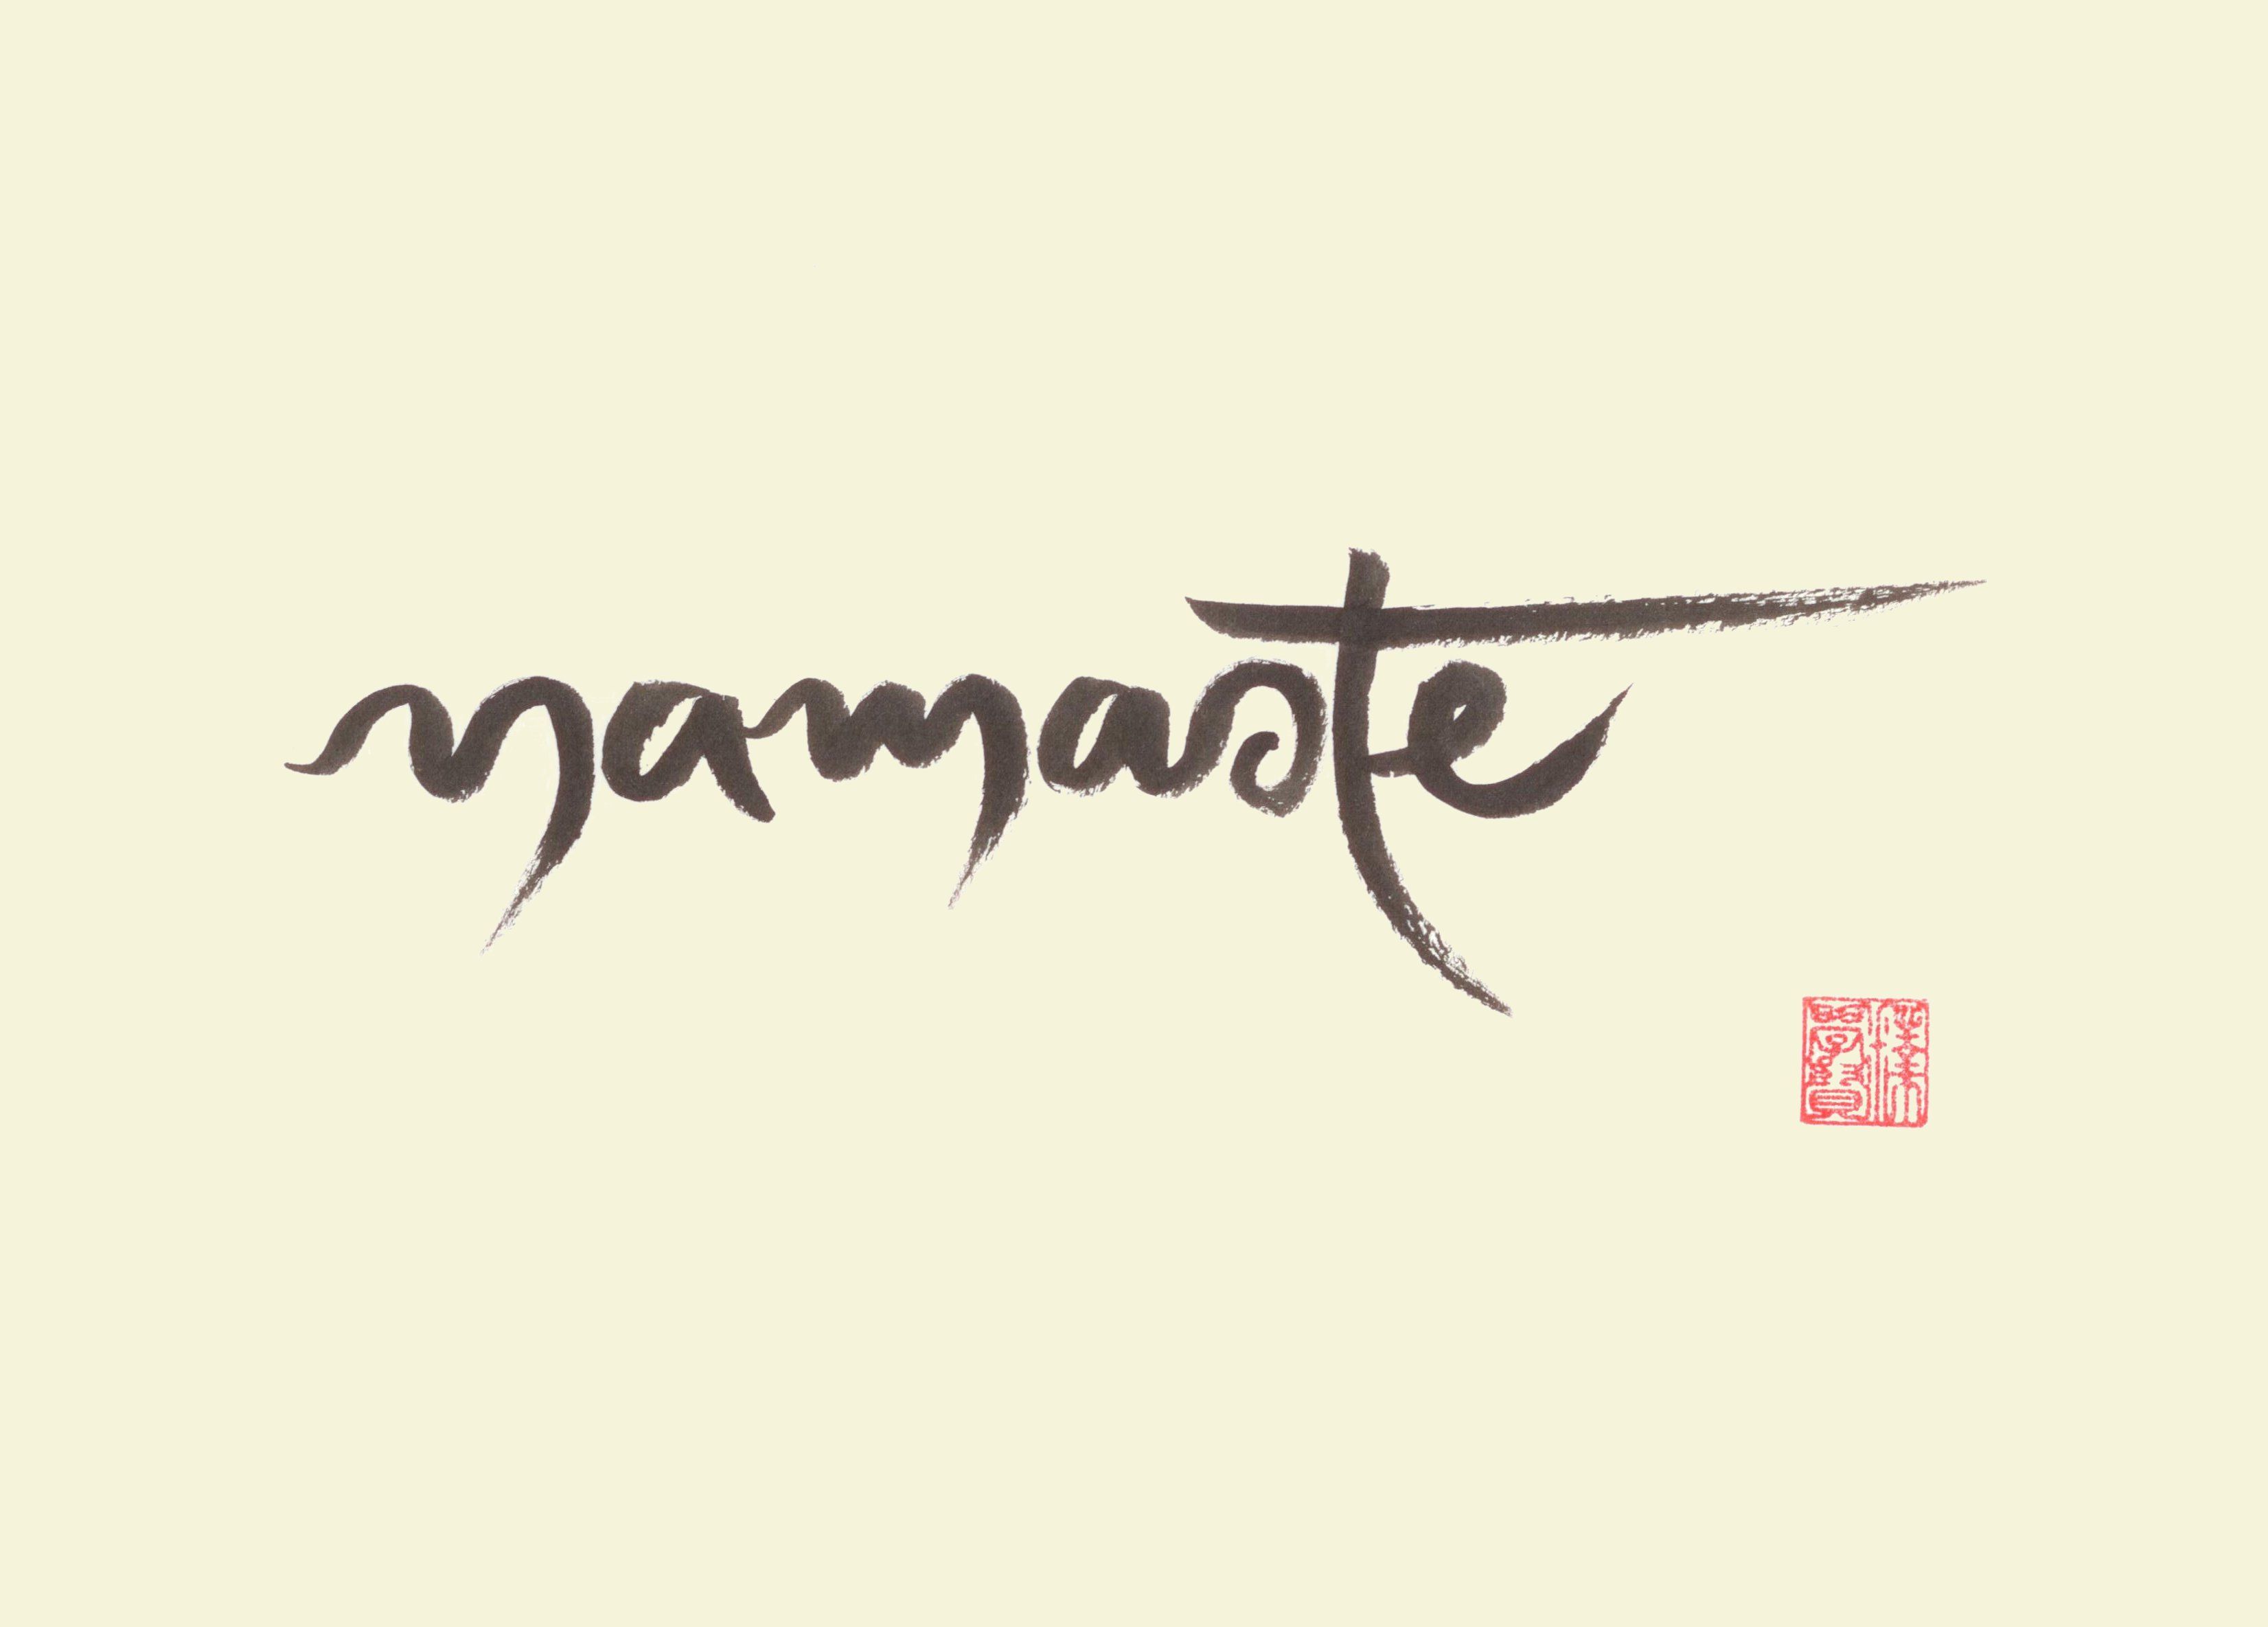 Namaste Tumblr Background